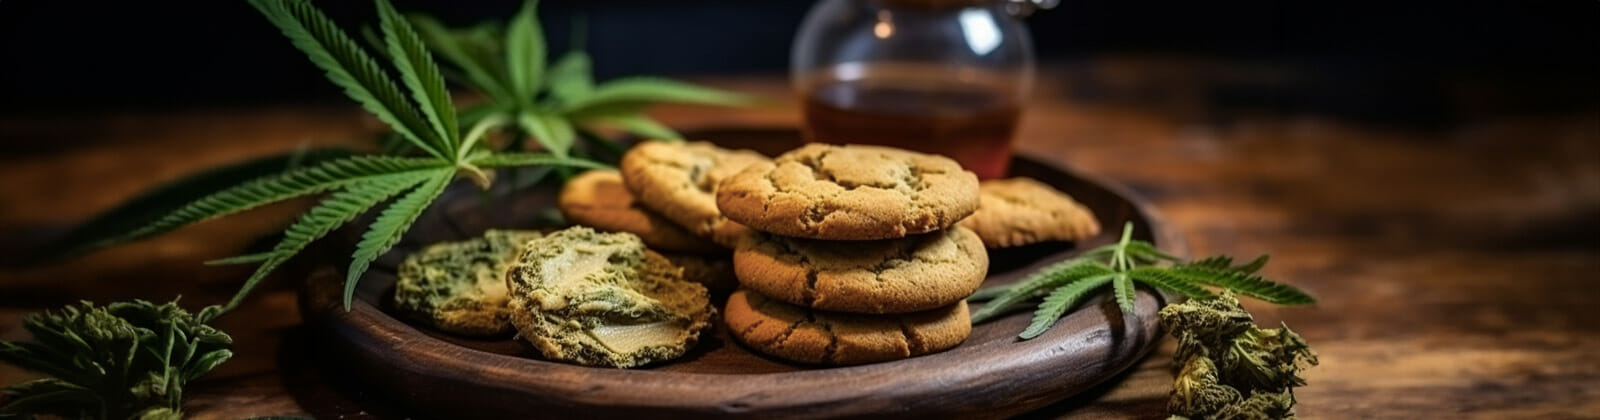 Cannabis-Kekse als alternative zu Hasch-Brownies